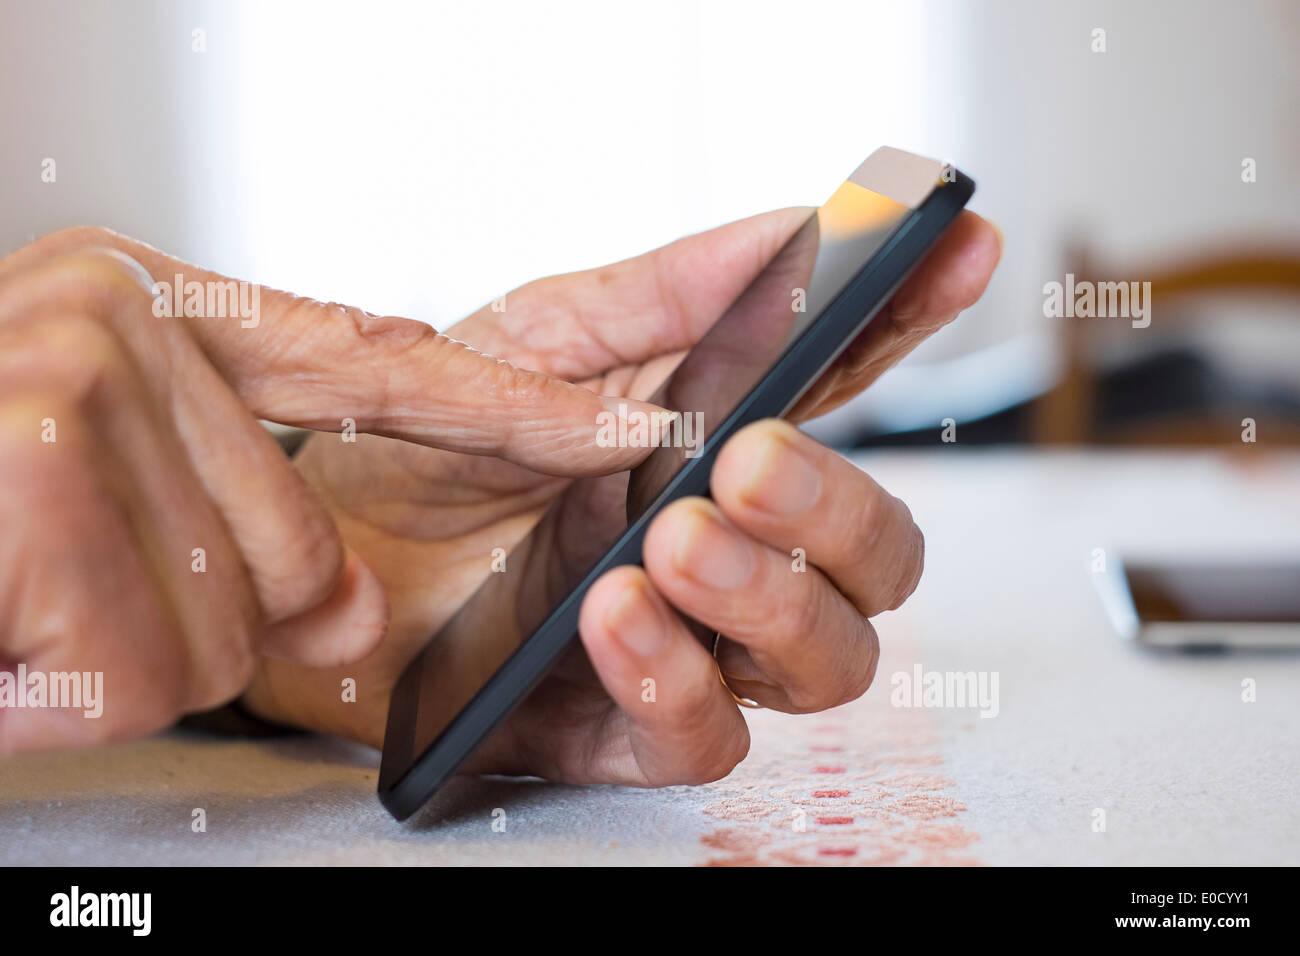 Femmina scrittura matura il telefono cellulare in luoghi chiusi closeup Foto Stock